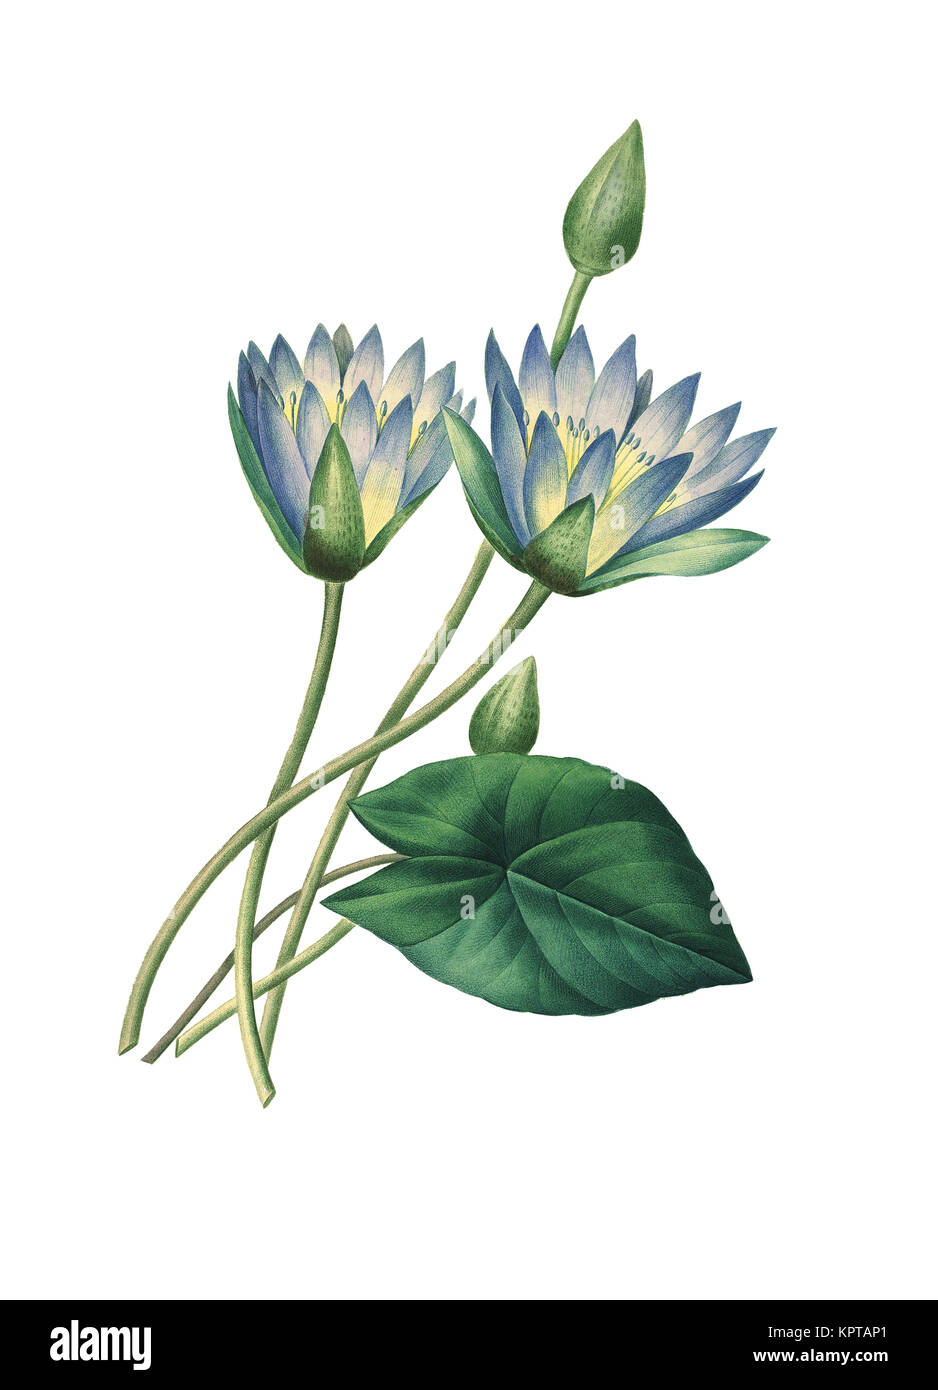 19ème siècle Illustration d'un Nymphaea caerulea, connu sous le nom de lotus bleu (ou bleu lotus égyptien), mais aussi nénuphar bleu (ou bleu de l'eau égyptienne lily) Banque D'Images